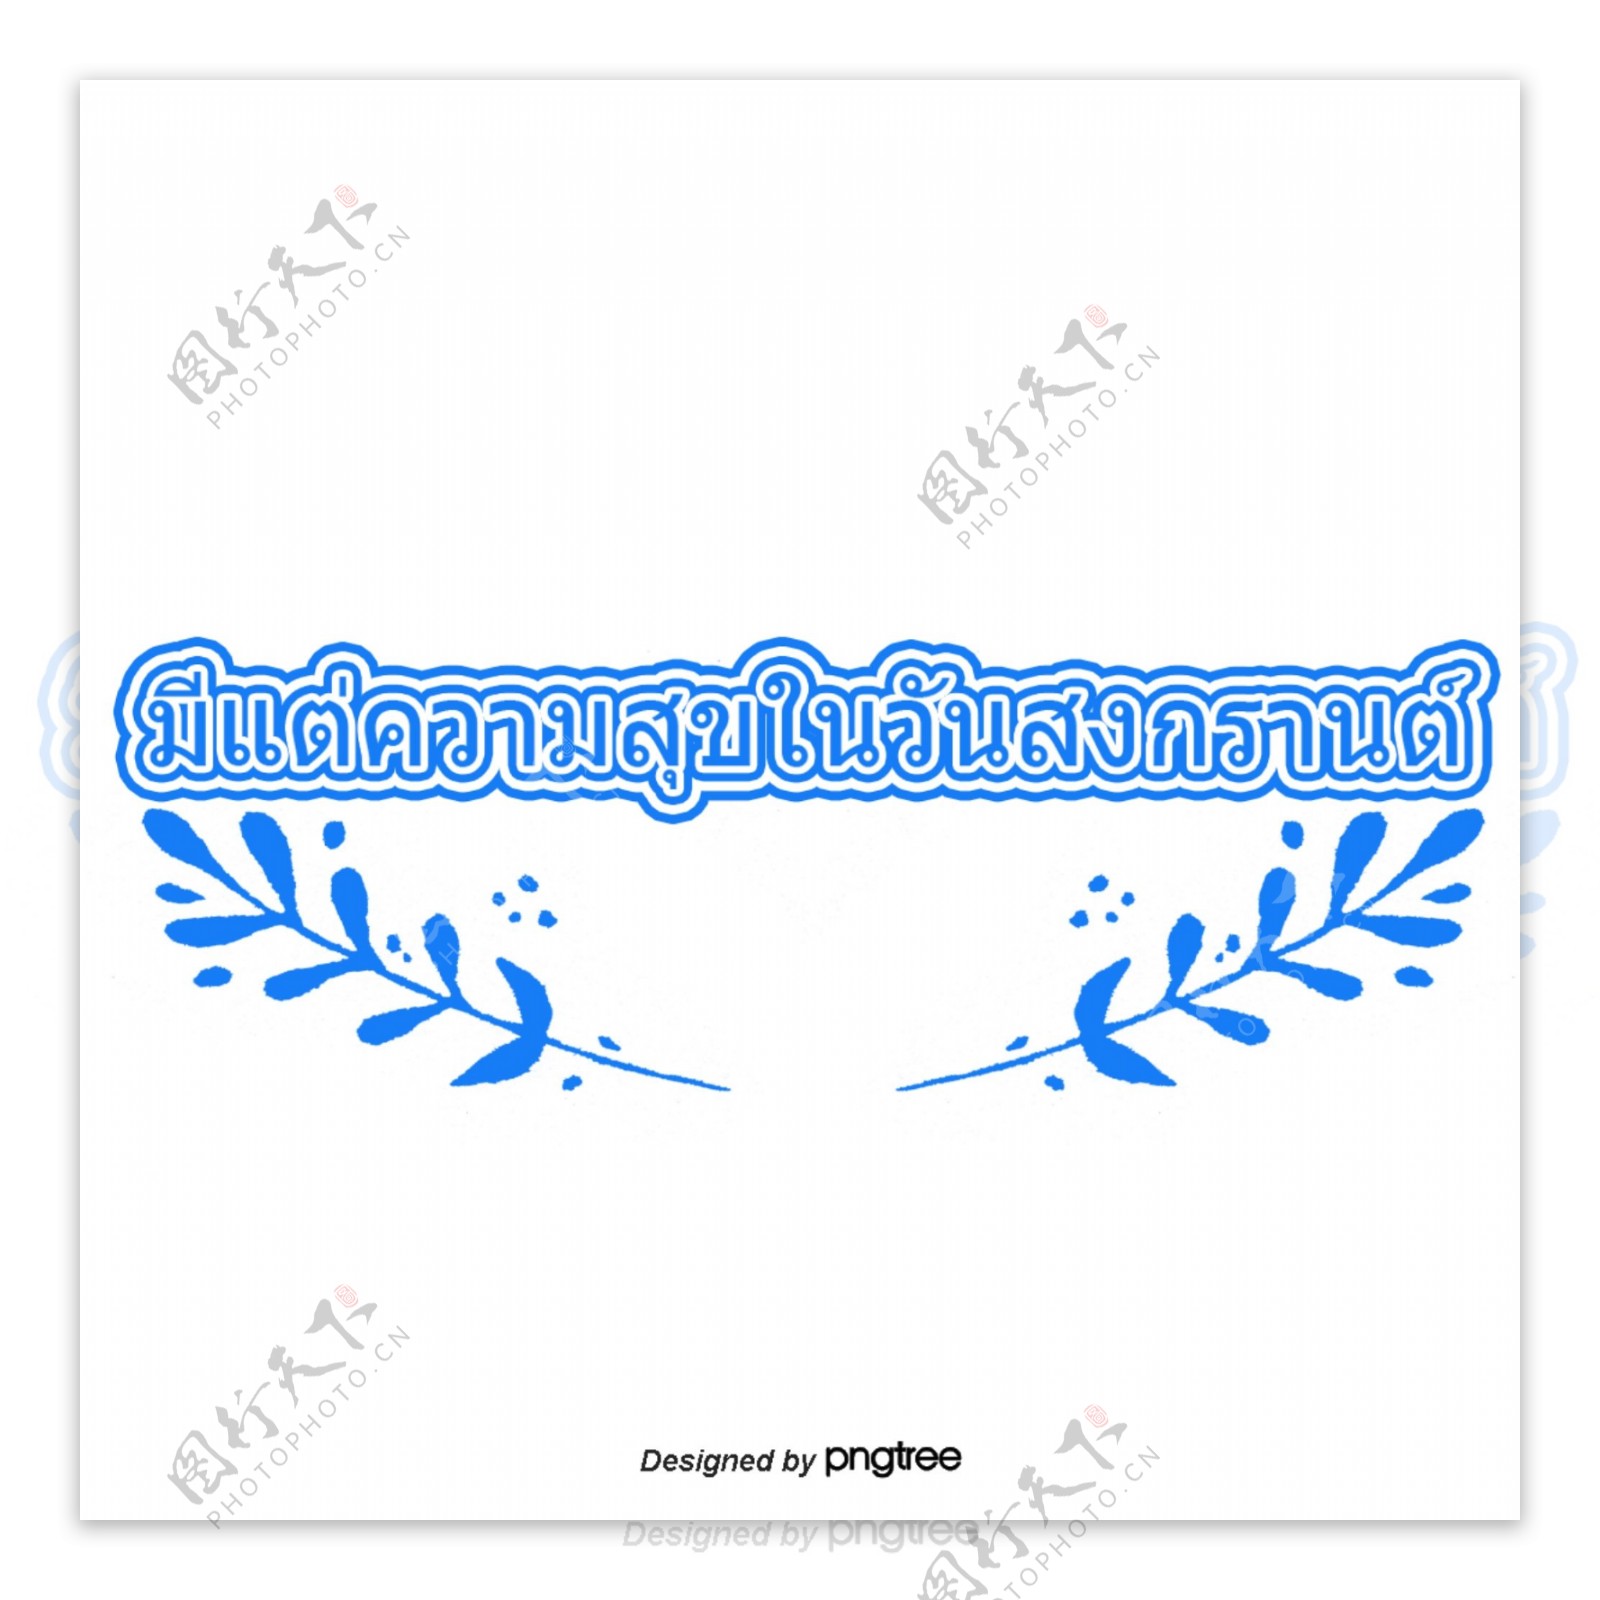 蓝色字体字体泰国泼水节的两叶快乐